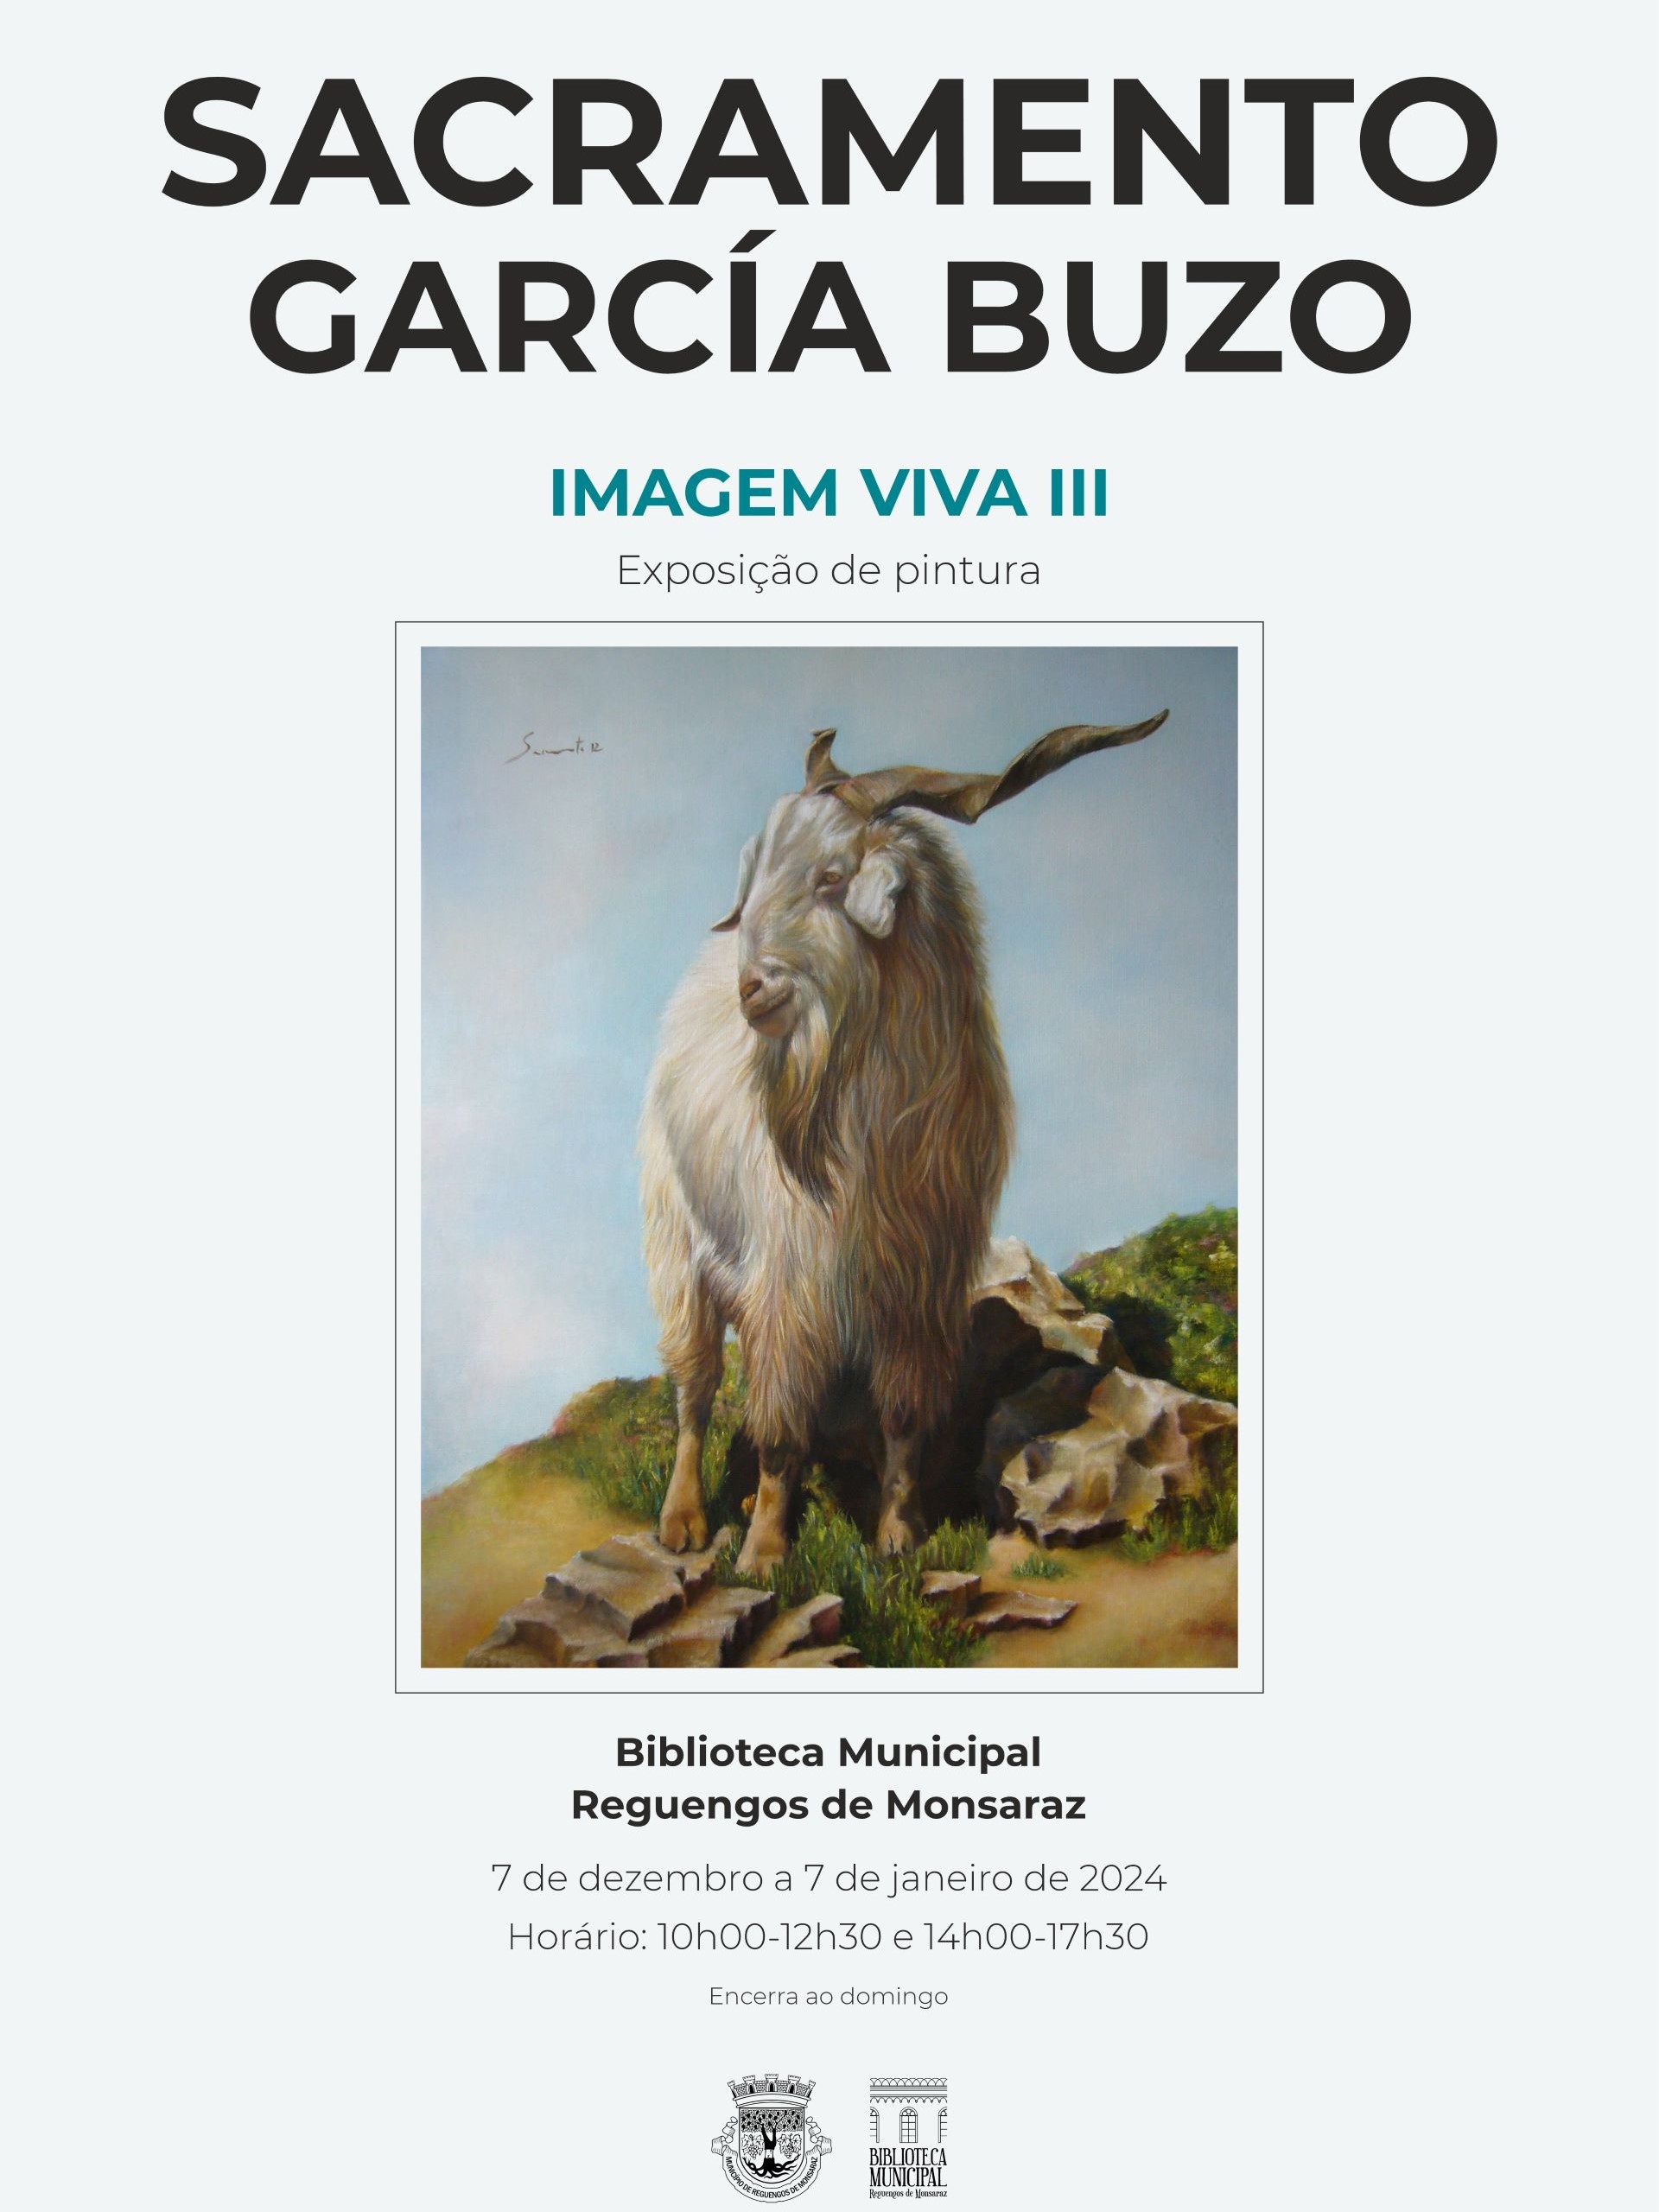 “Imagem Viva III” de Sacramento García Buzo | Exposição de pintura